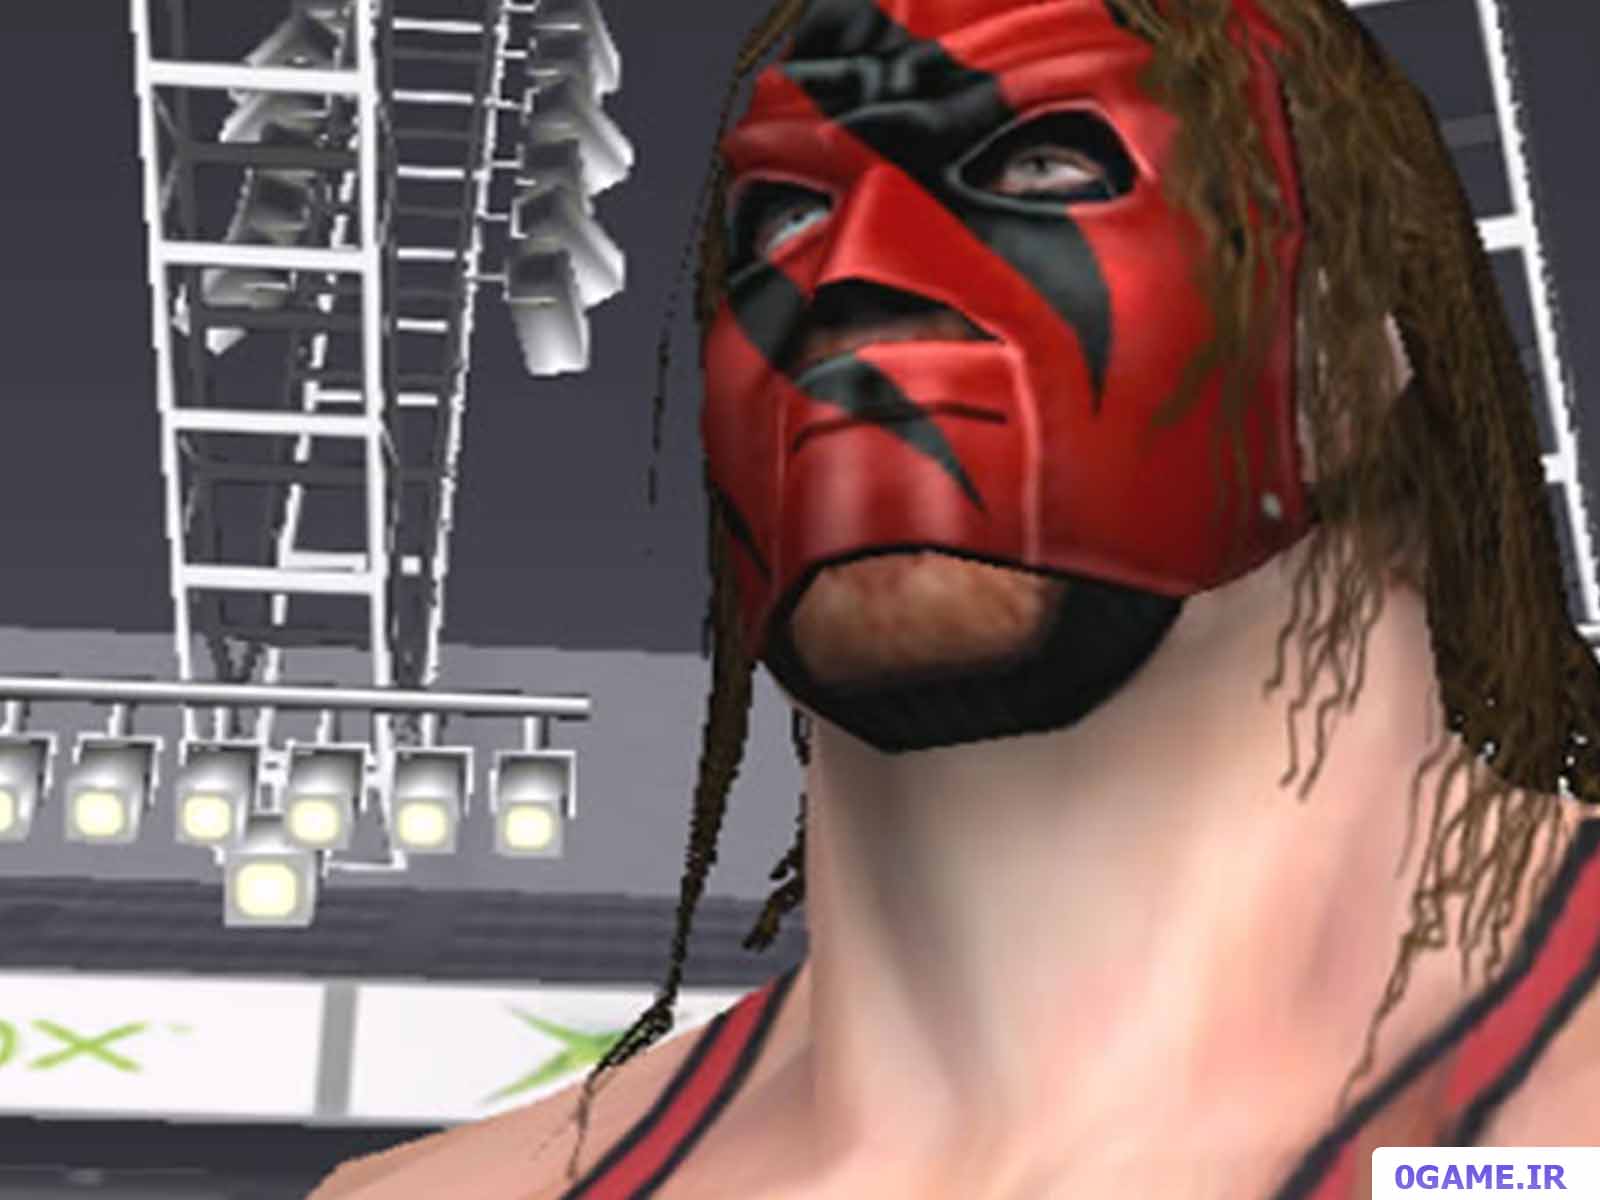 دانلود بازی کشتی کج (WWF Raw) نسخه کامل برای کامپیوتر